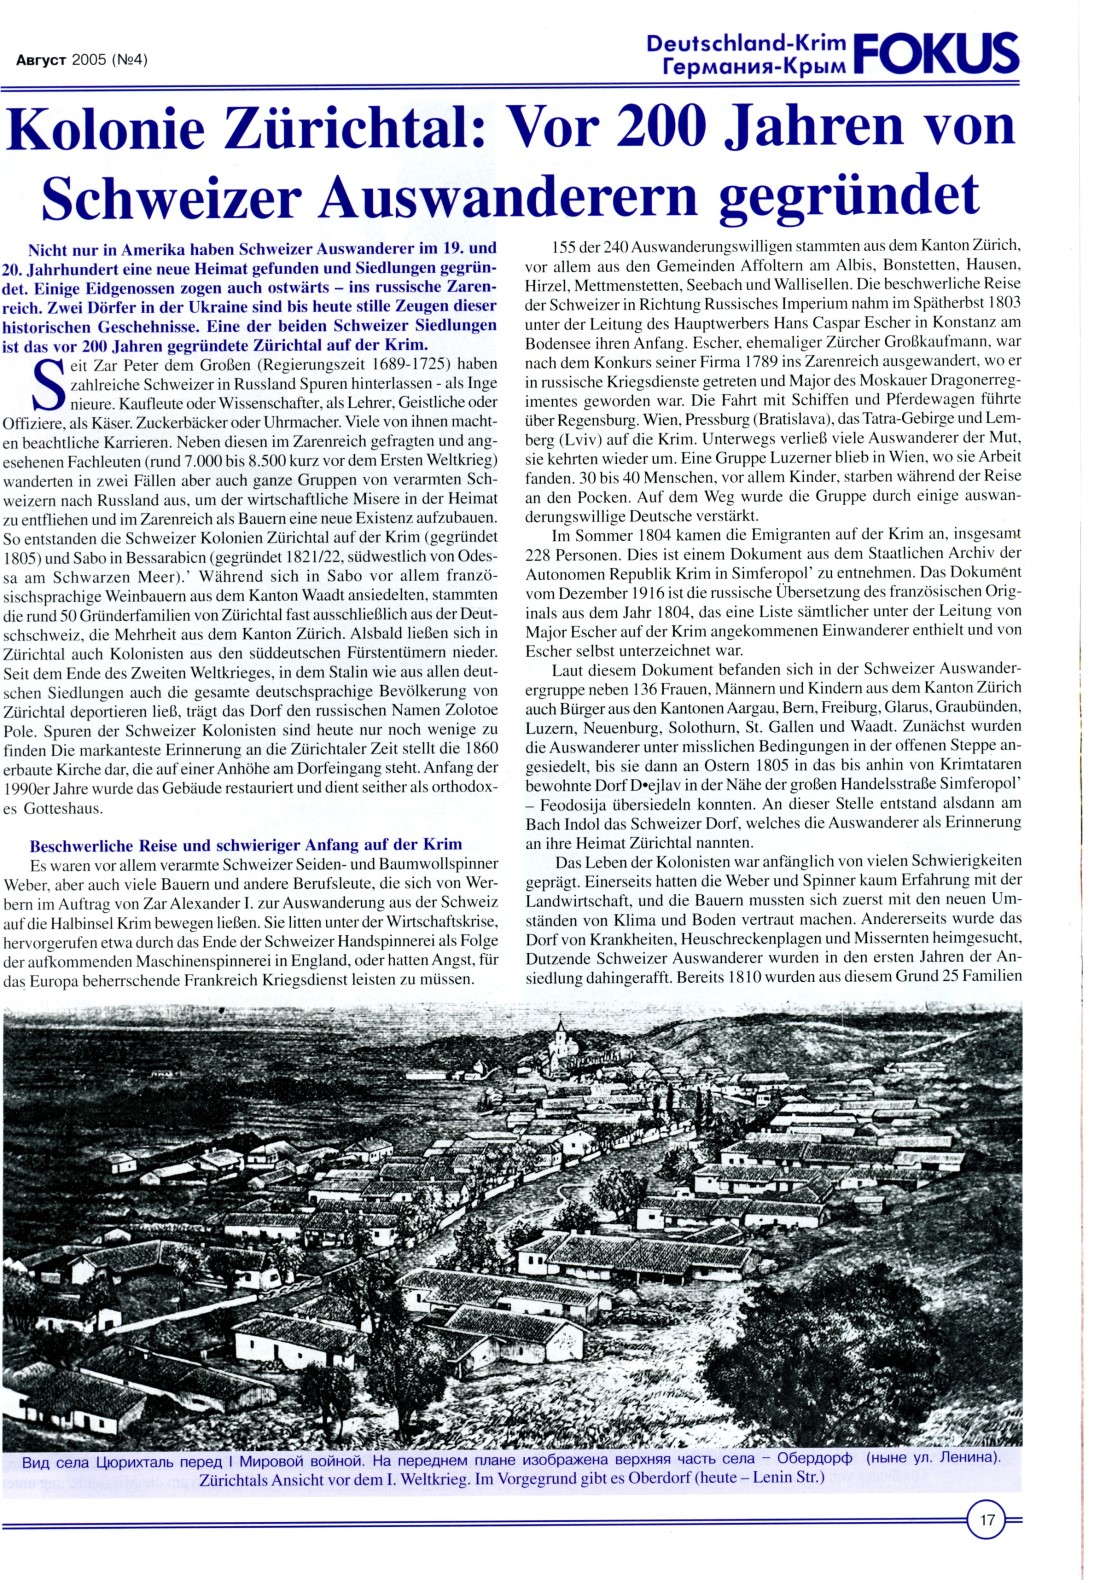 Kolonie Zrichtal: Vor 200 Jahren von Schweizer Auswanderern gegrndet, FOKUS Deutschland-Rim August 2005, Seite 17